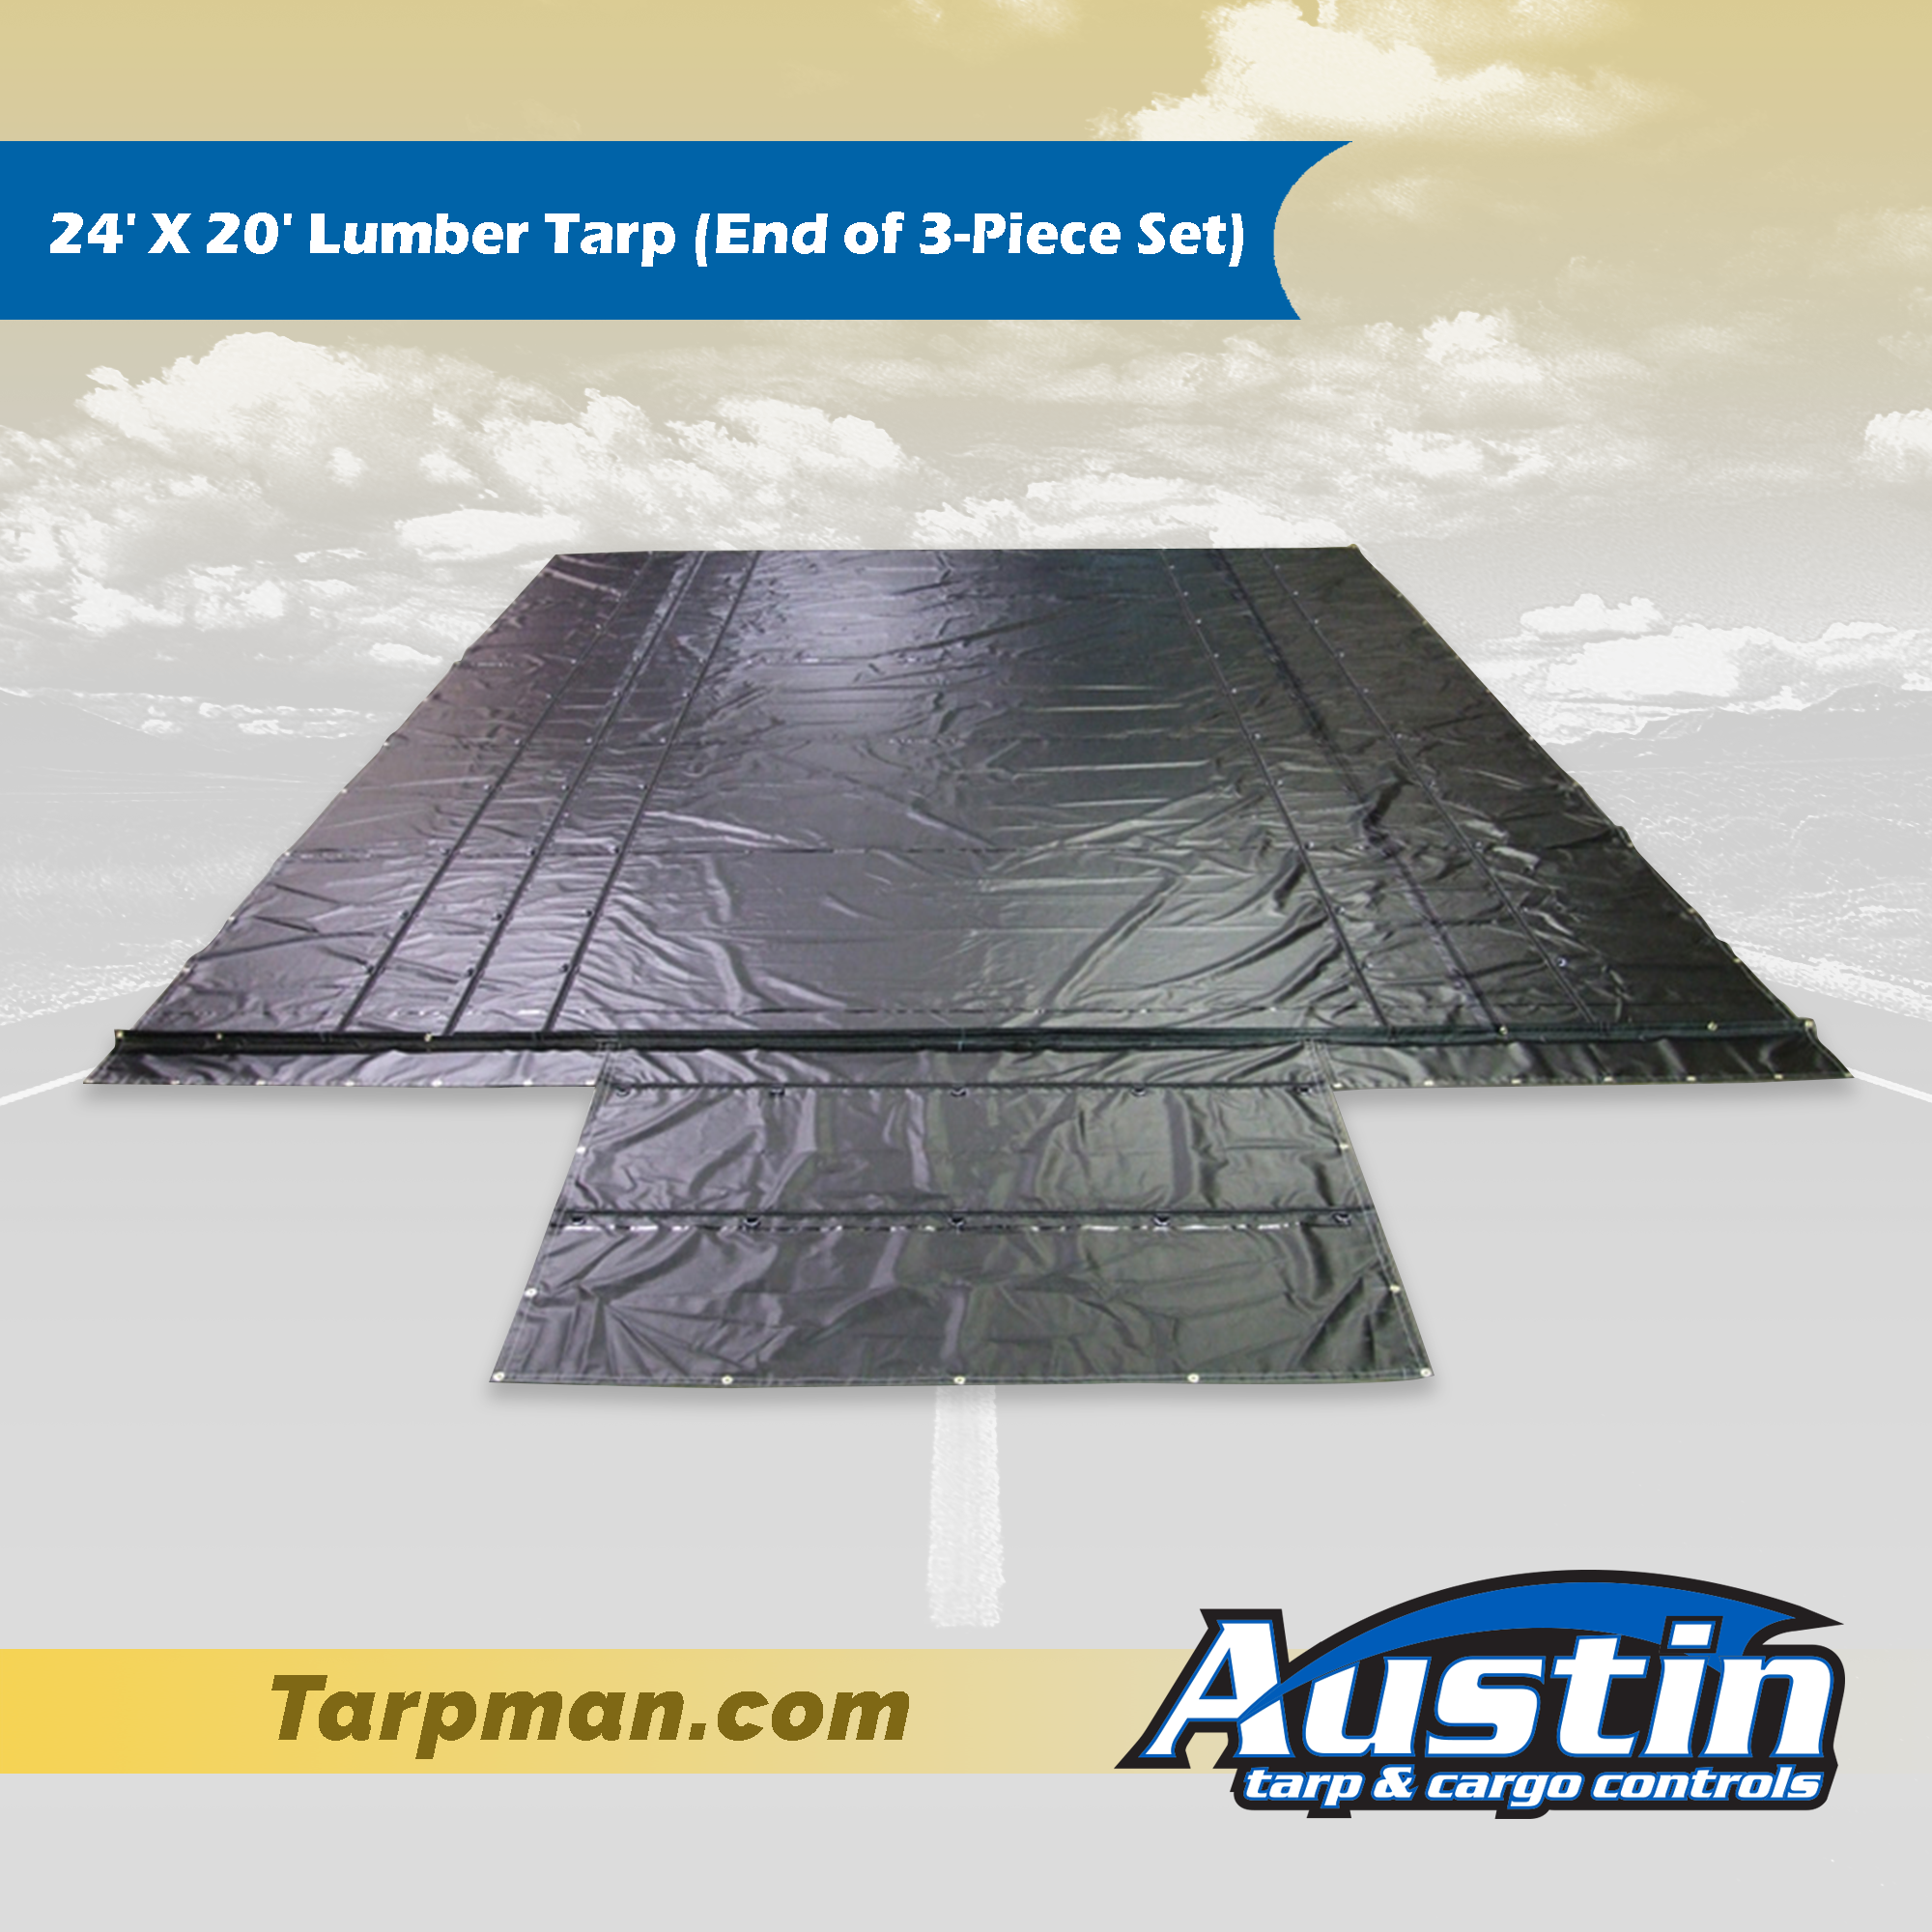 24' X 20' Lumber Tarp (End of 3-Piece Set) Tarpman.com | Austin Tarp & Cargo Controls